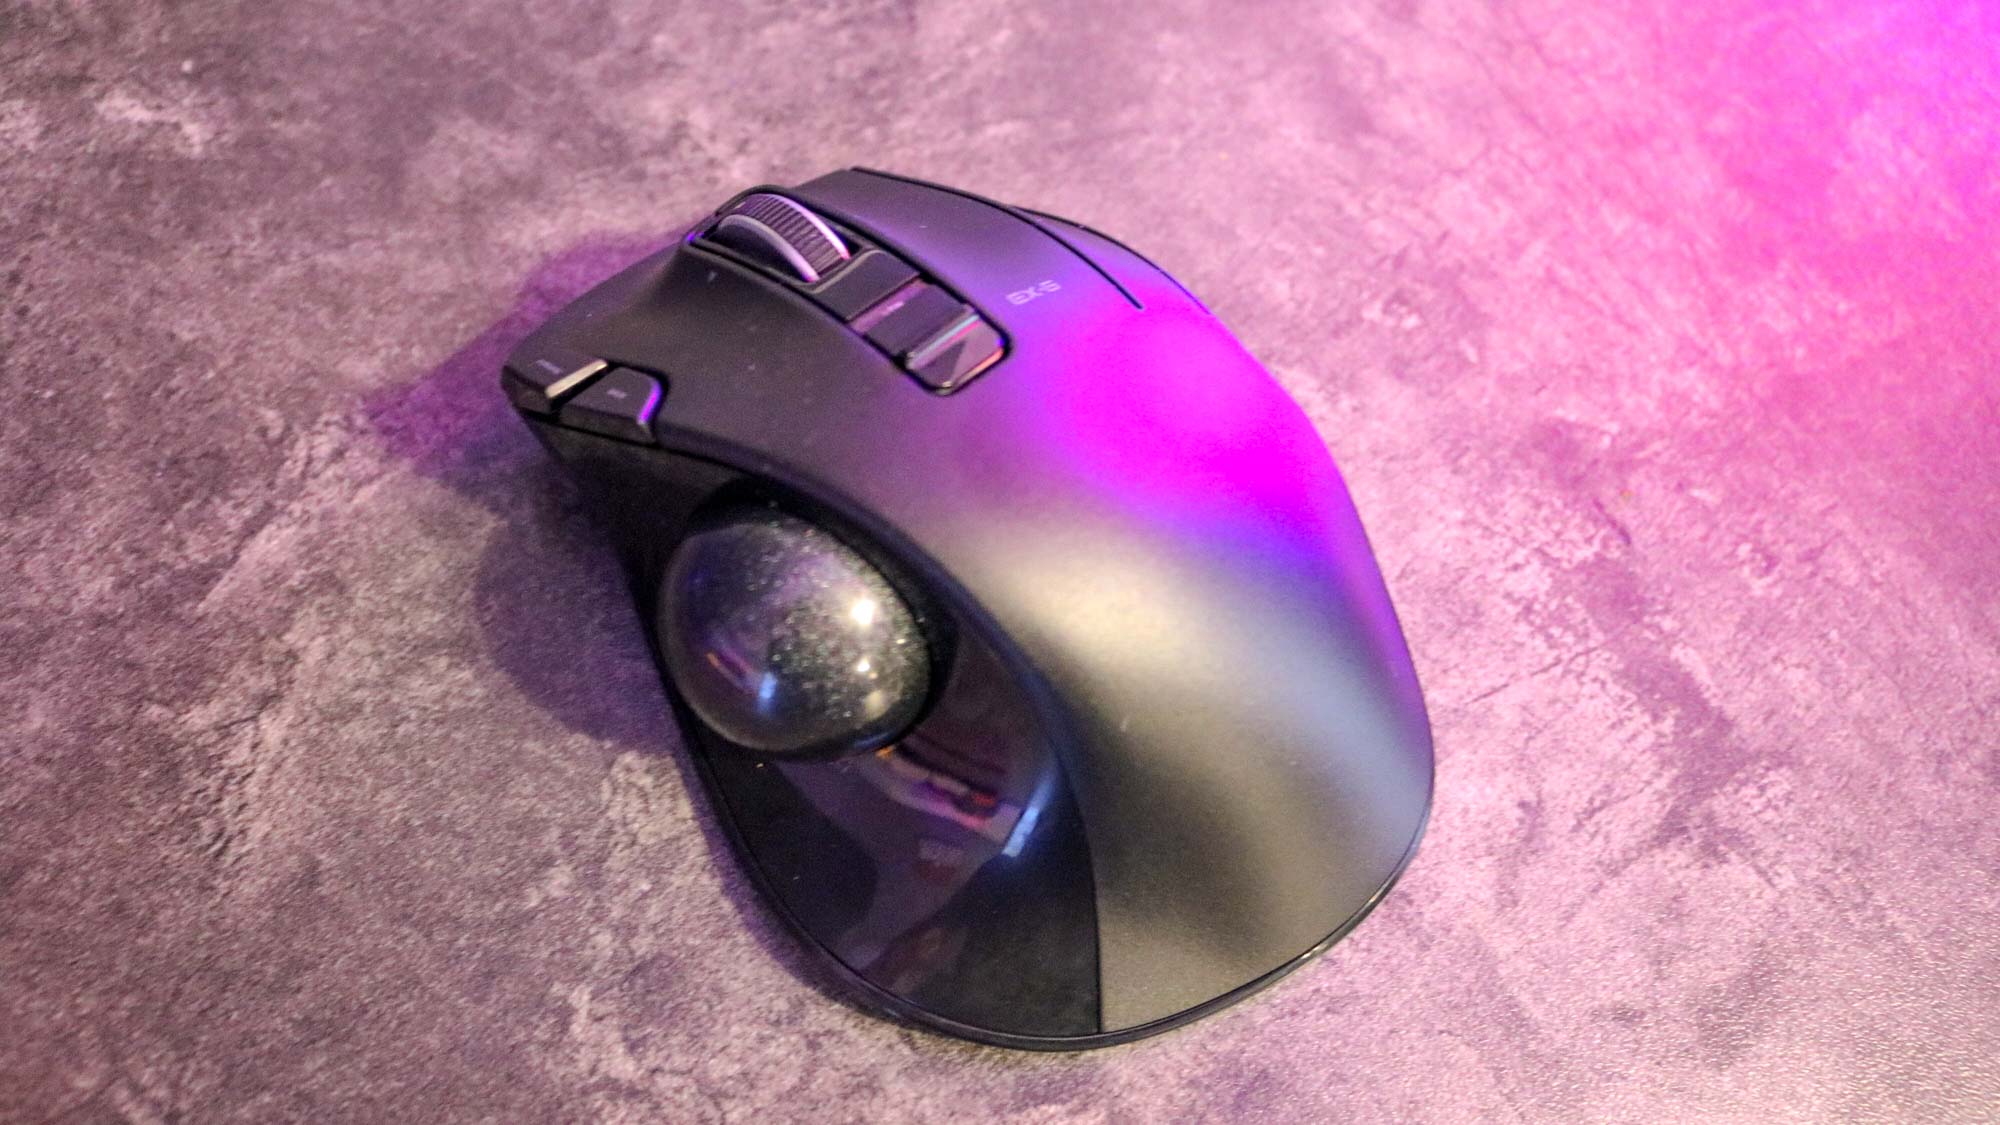 Elecom EX-G trackball mouse